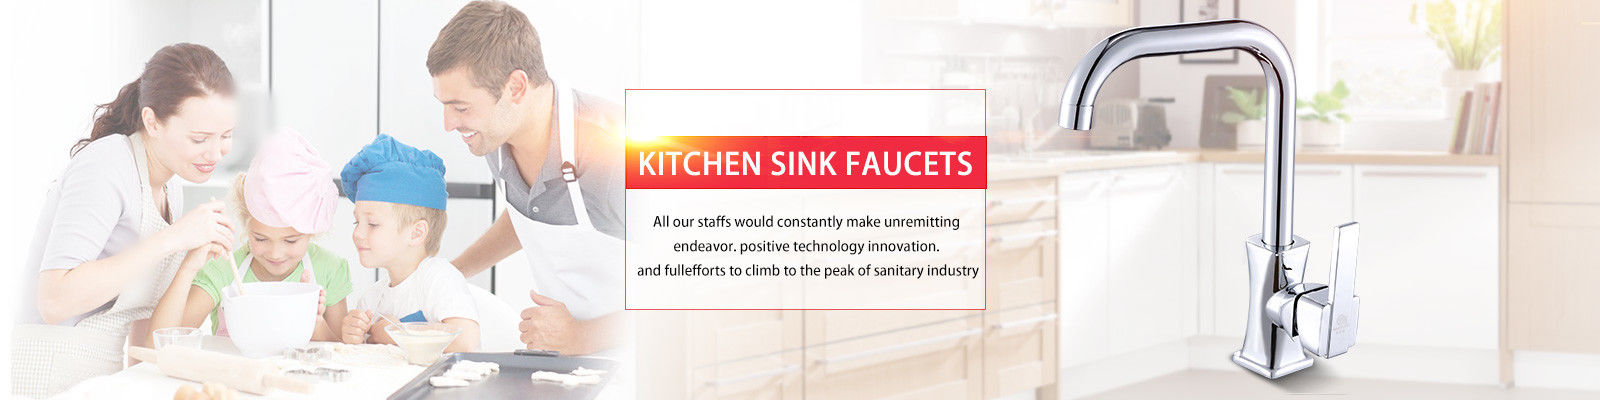 Faucet Kitchen Sink